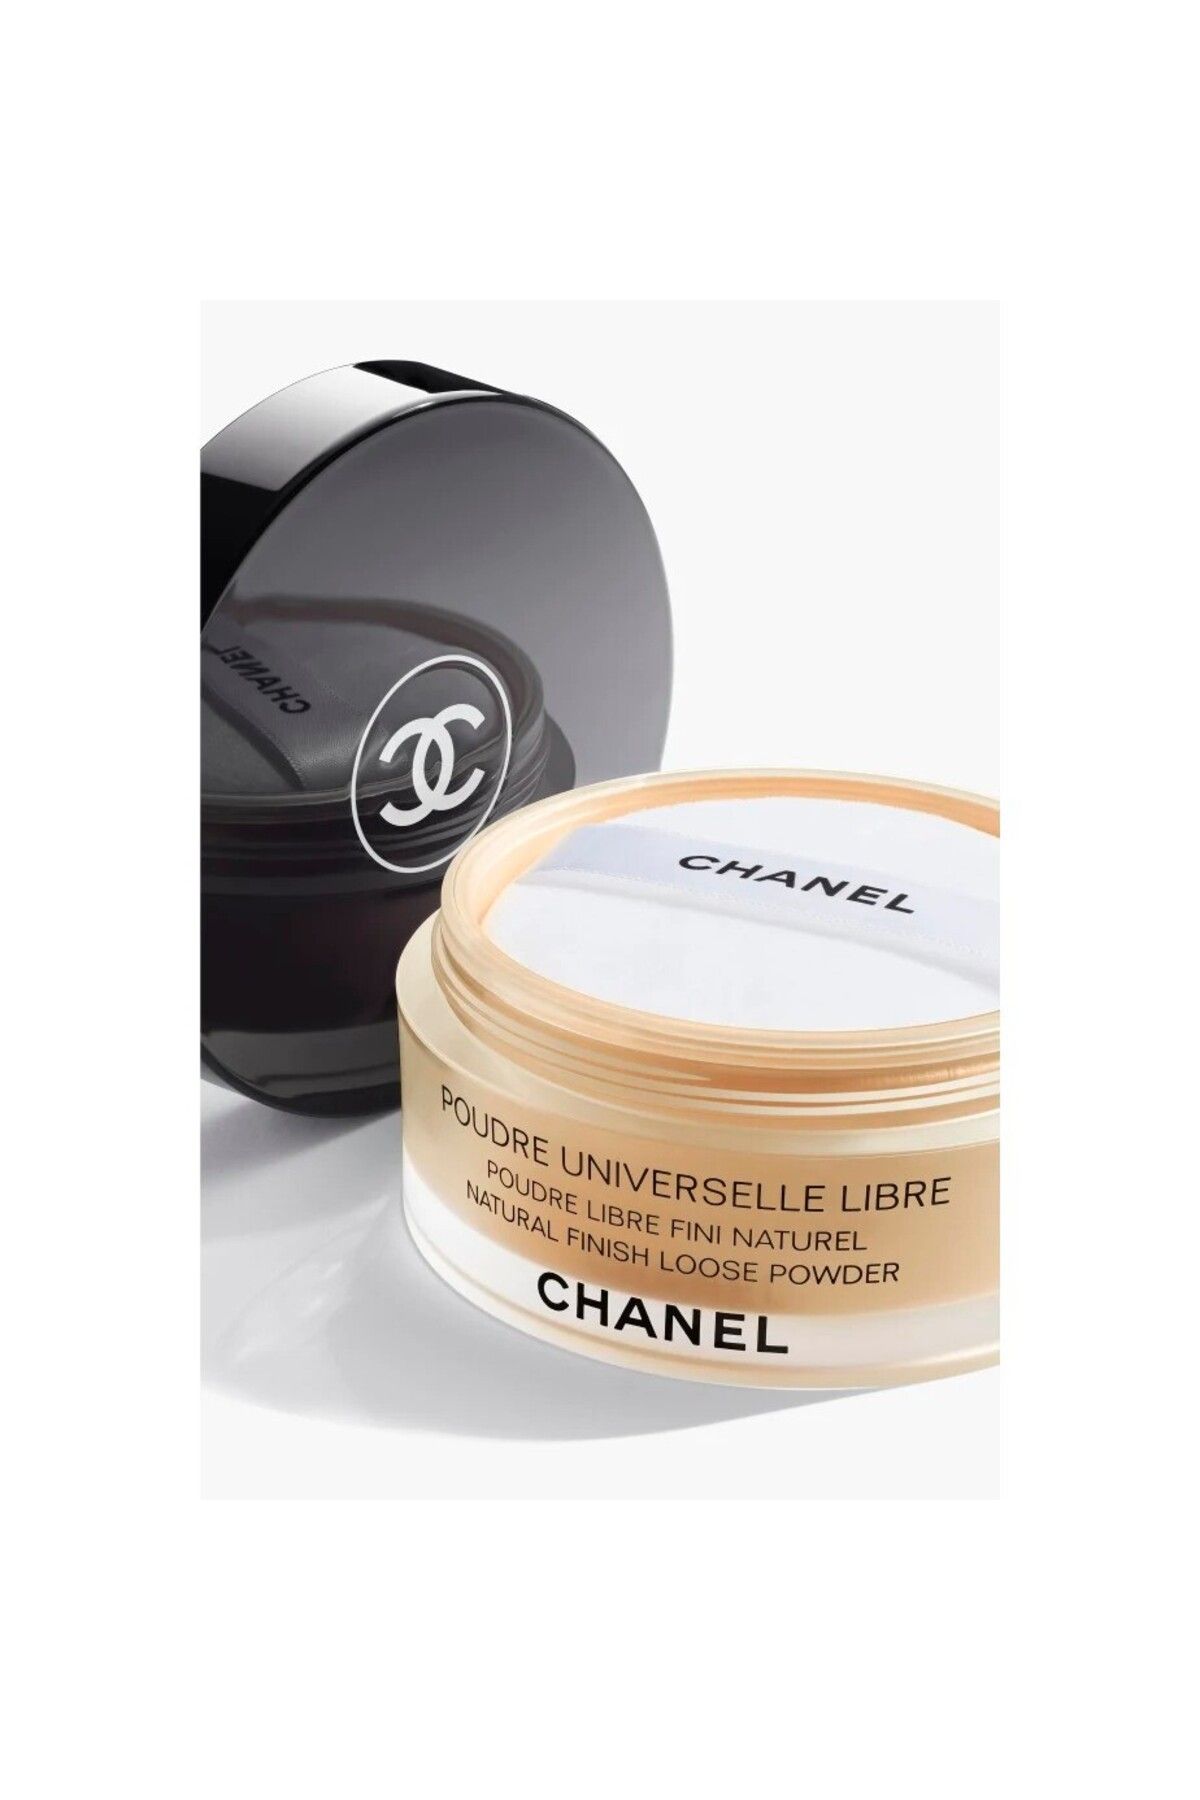 Chanel DOĞAL SONUÇ İÇİN TOZ PUDRA - POUDRE UNIVERSELLE LIBRE - 40